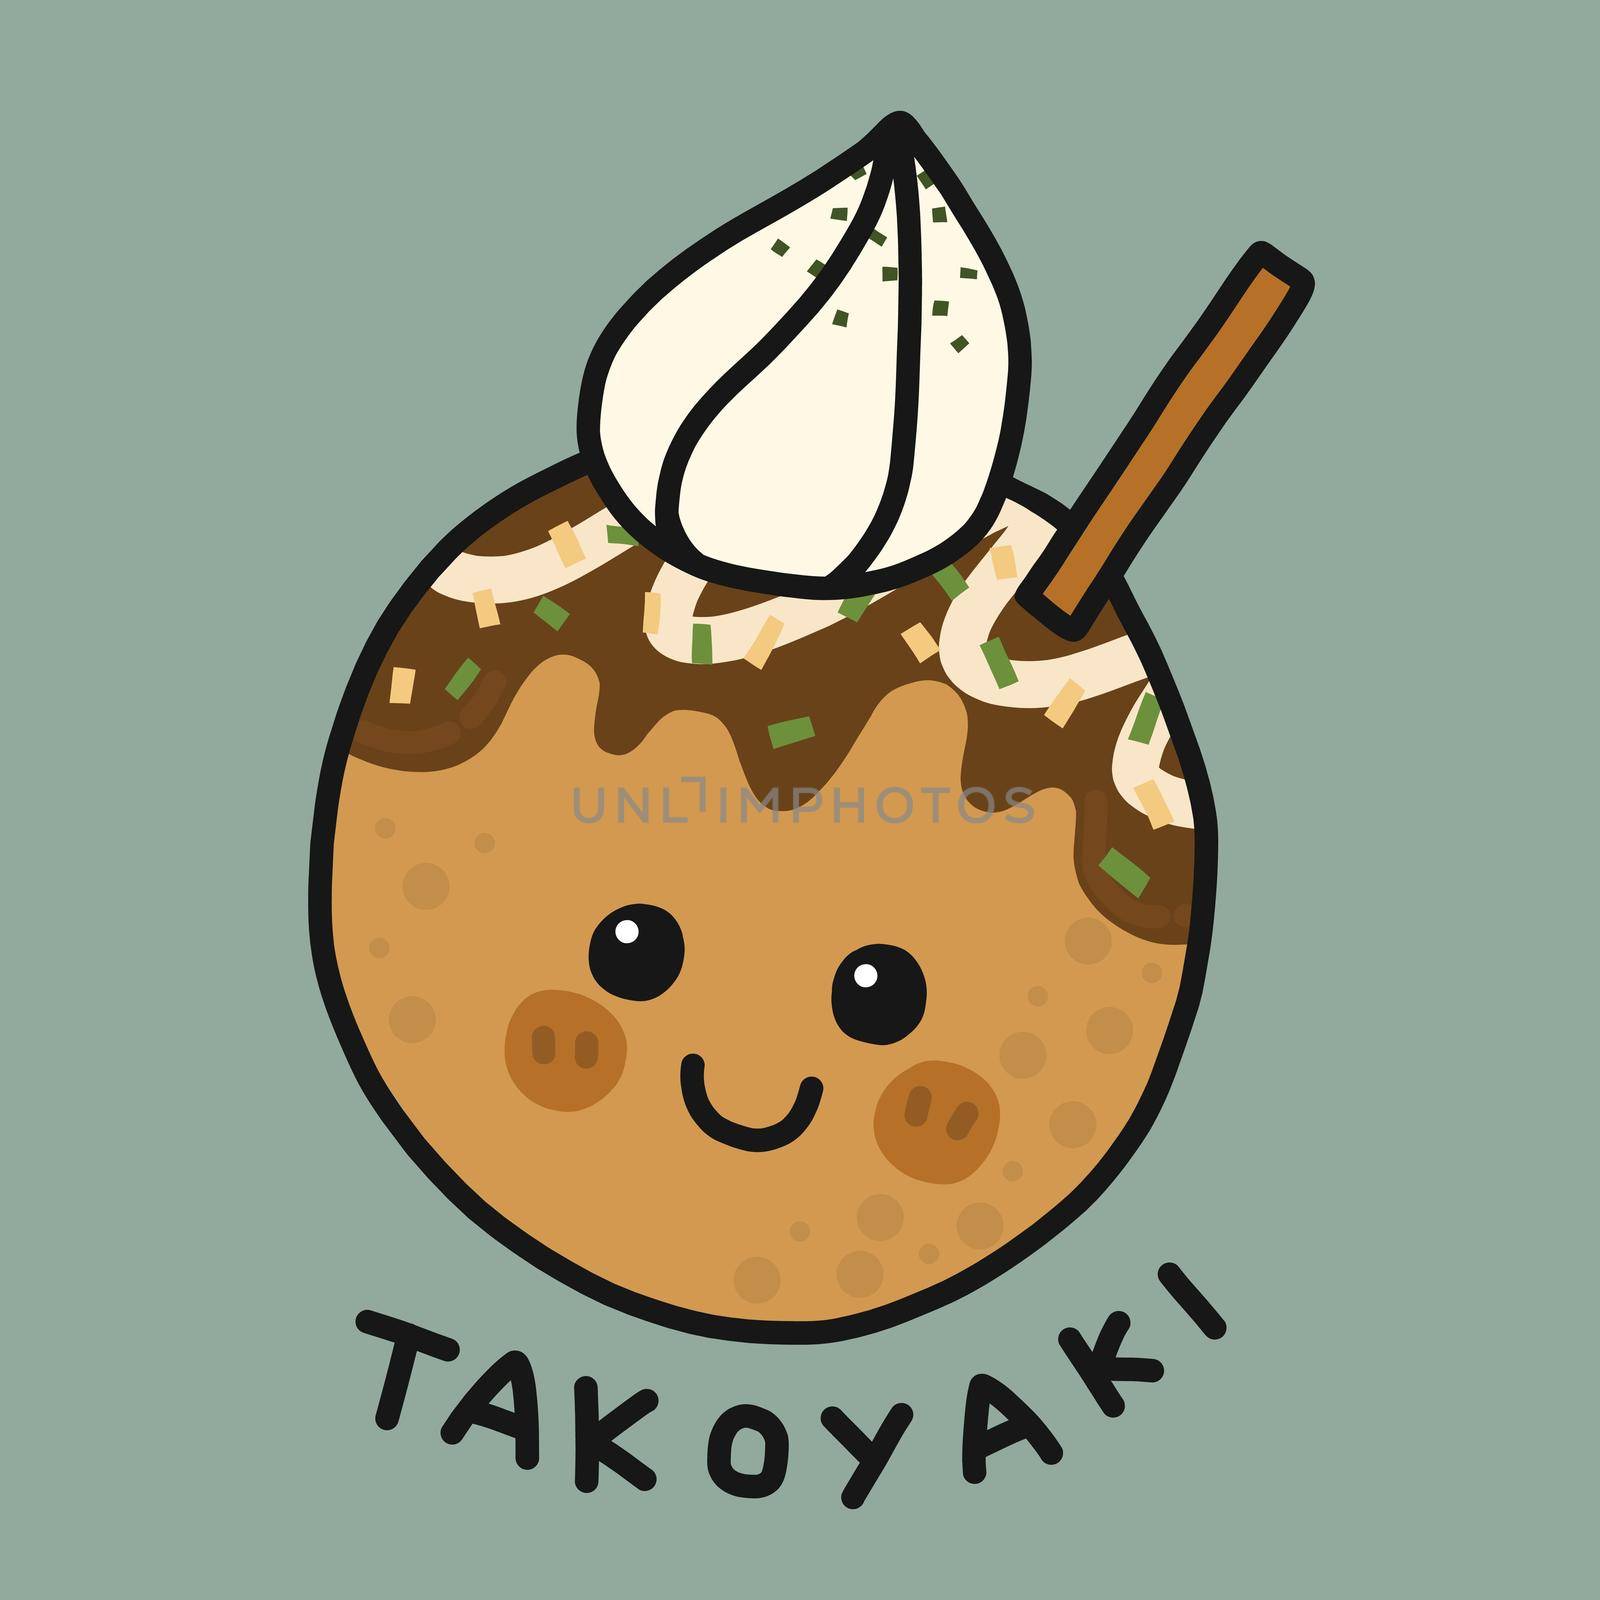 Takoyaki (Japanese food) cartoon vector illustration